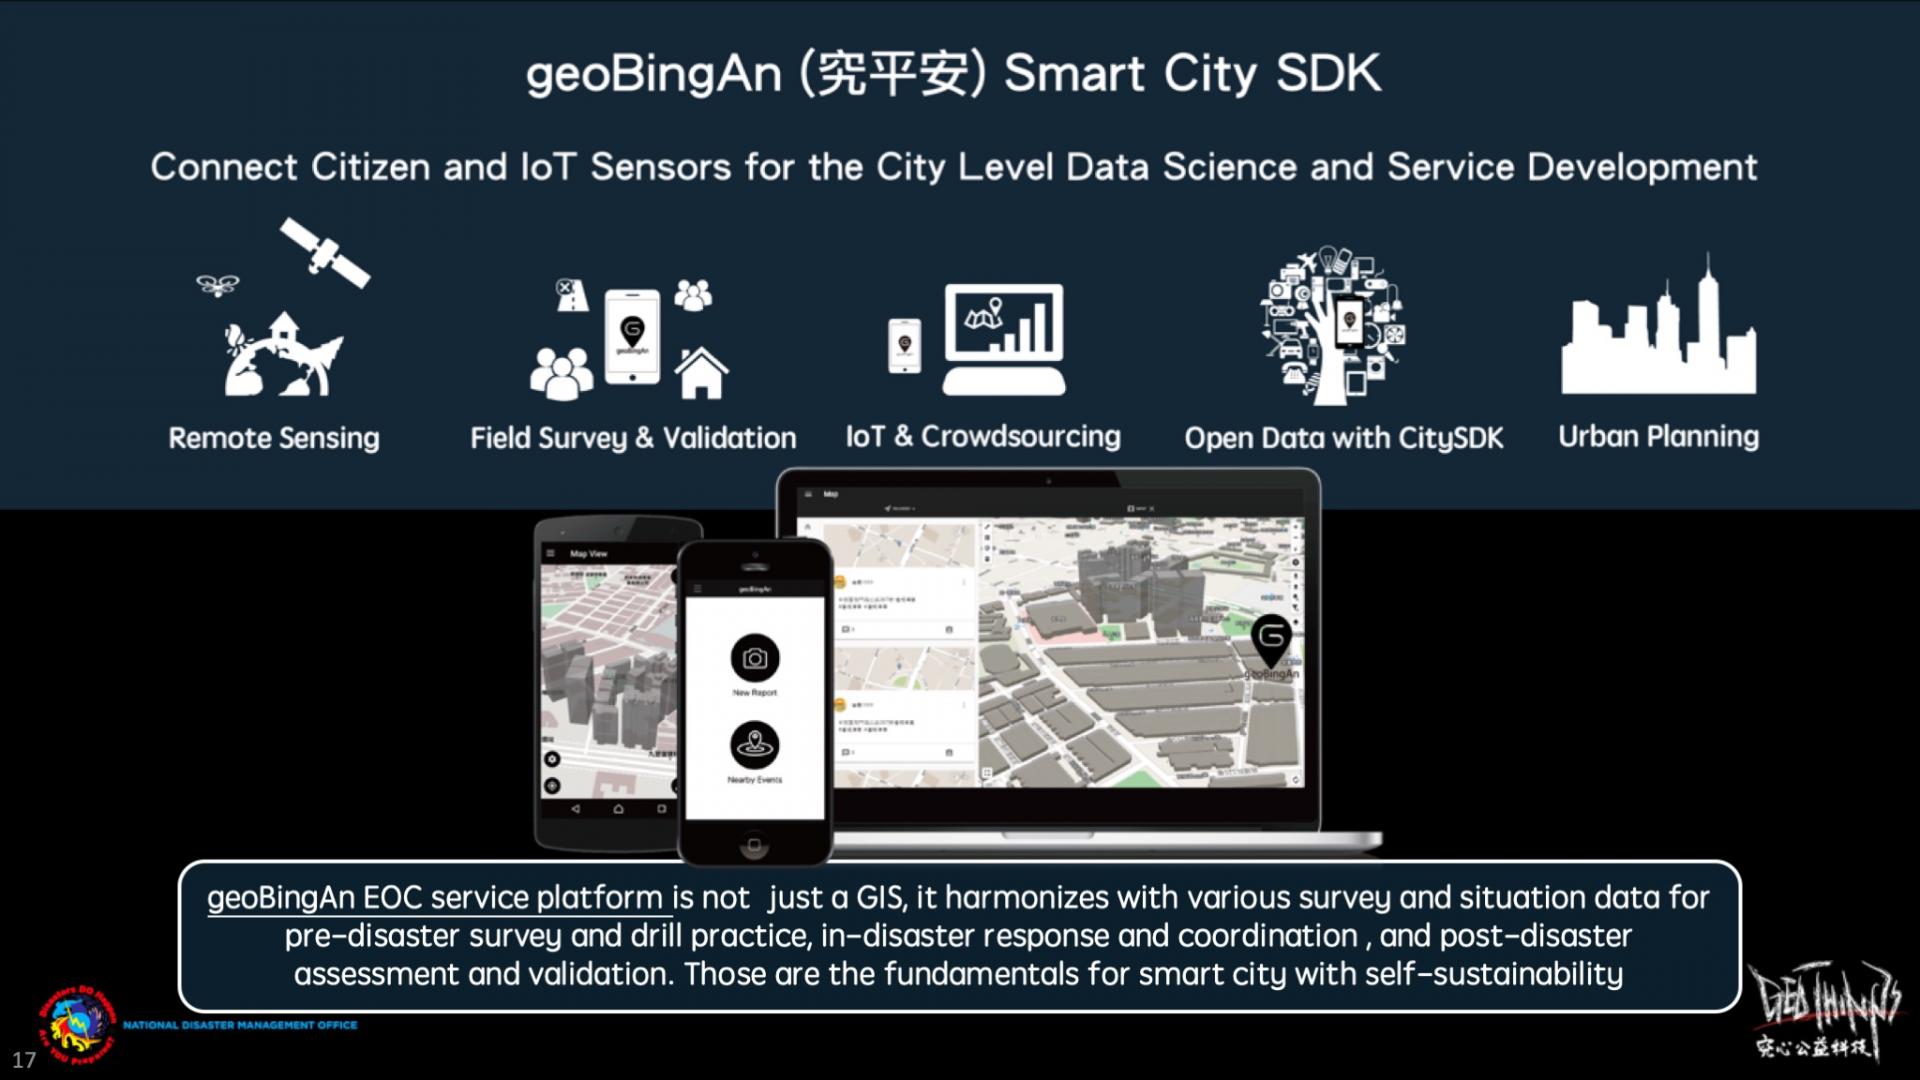 geoBingAn può essere non solo l’EOC, ma anche la piattaforma per il kit di sviluppo dei servizi della smart city per la pianificazione urbana!